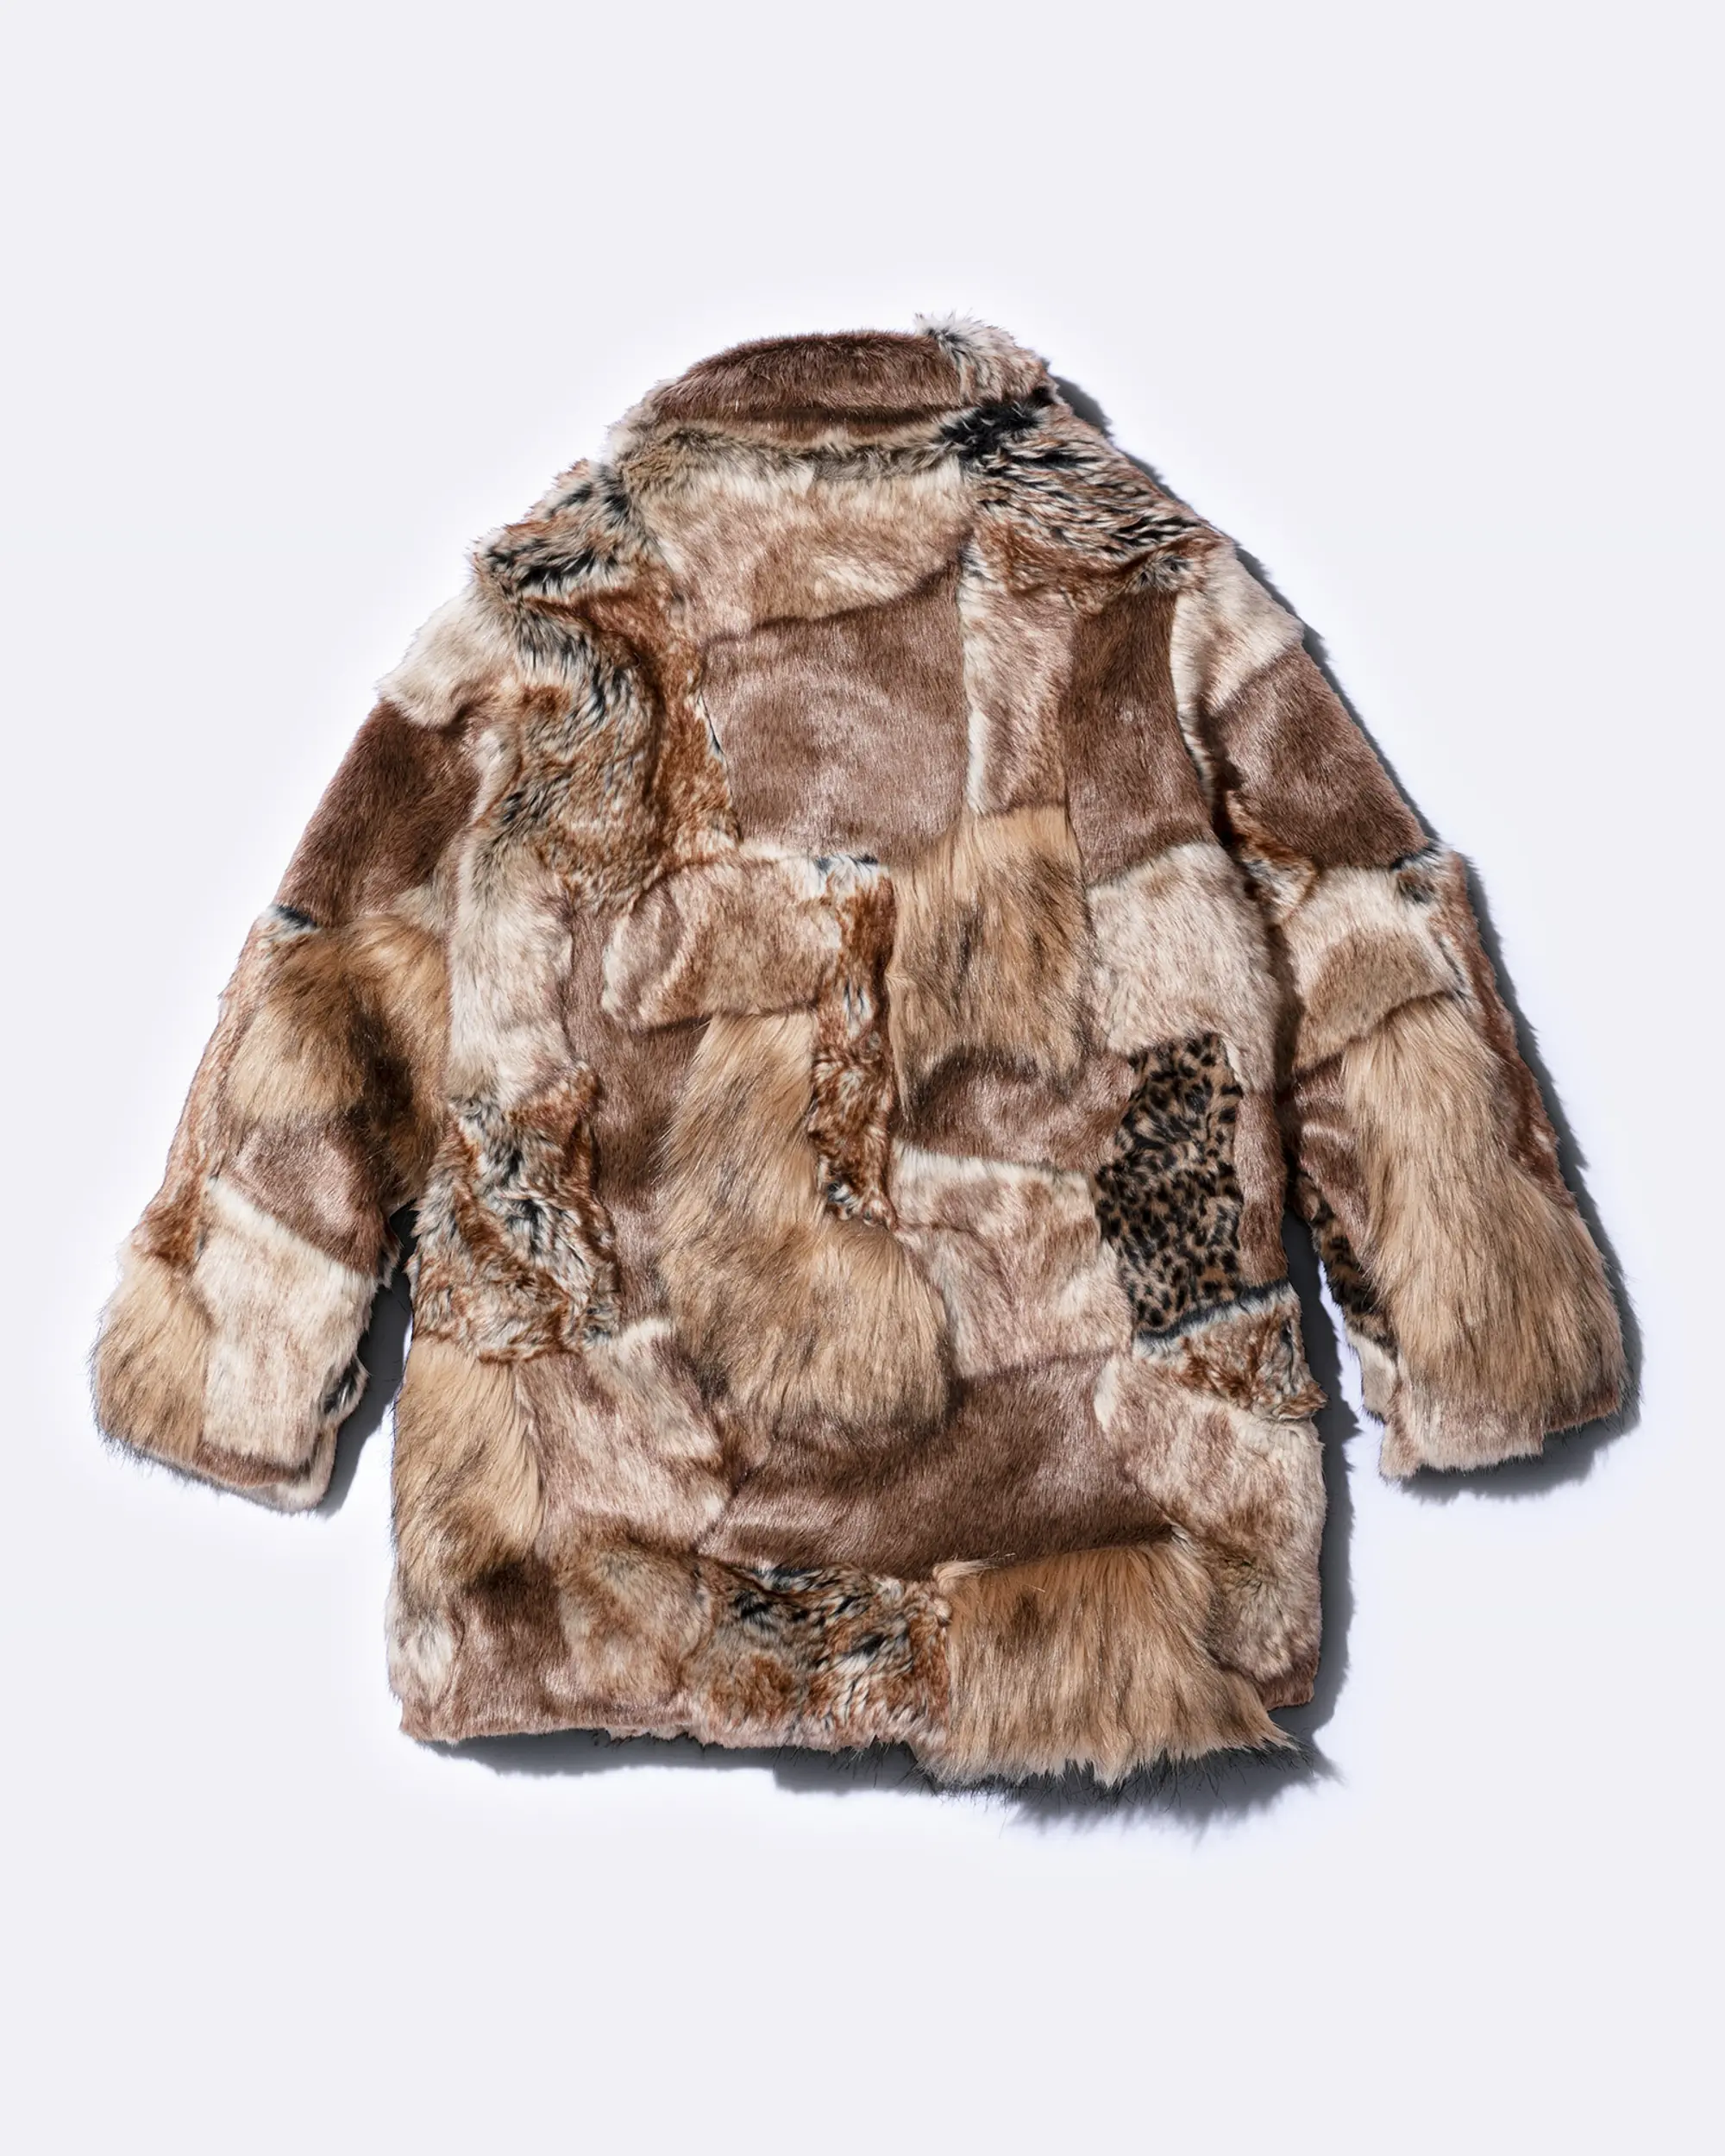 Supreme®/MM6 Maison Margiela Patchwork Faux Fur Coat | Supreme 24ss